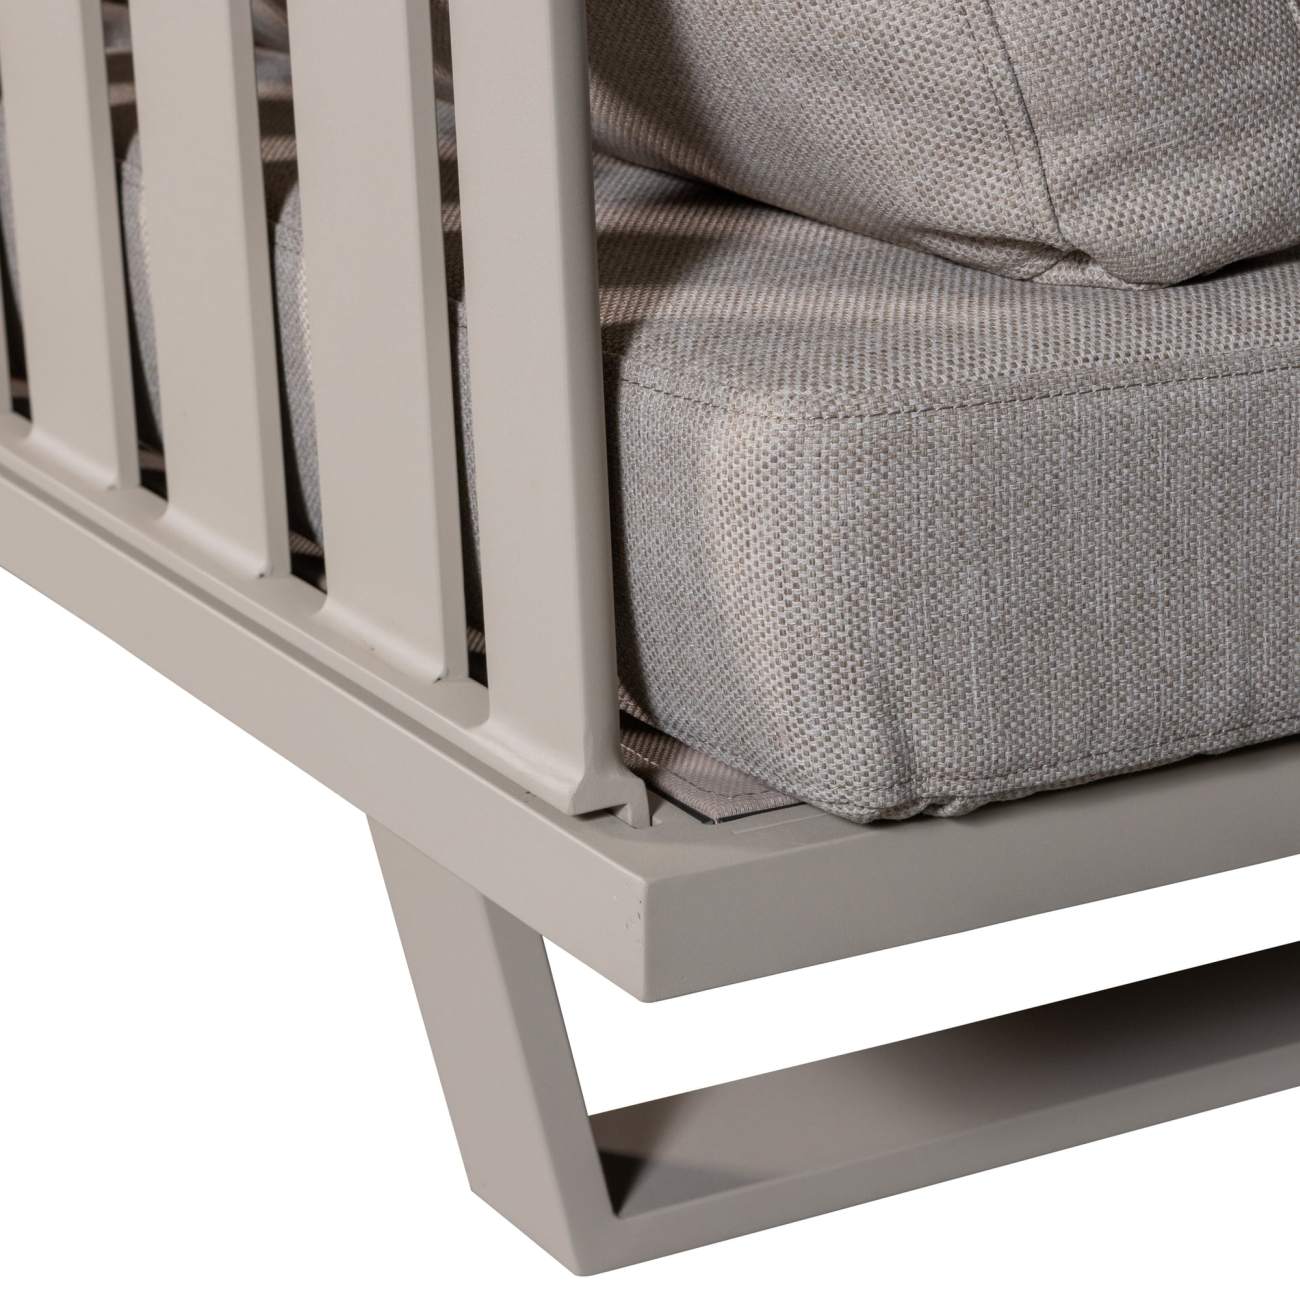 Das Gartensofa Bear überzeugt mit seinem modernen Design. Gefertigt wurde es aus Stoff, welcher einen Sand Farbton besitzt. Das Gestell ist aus Aluminium und hat eine Sand Farbe. Das Sofa besitzt eine Sitzbreite von 210 cm.